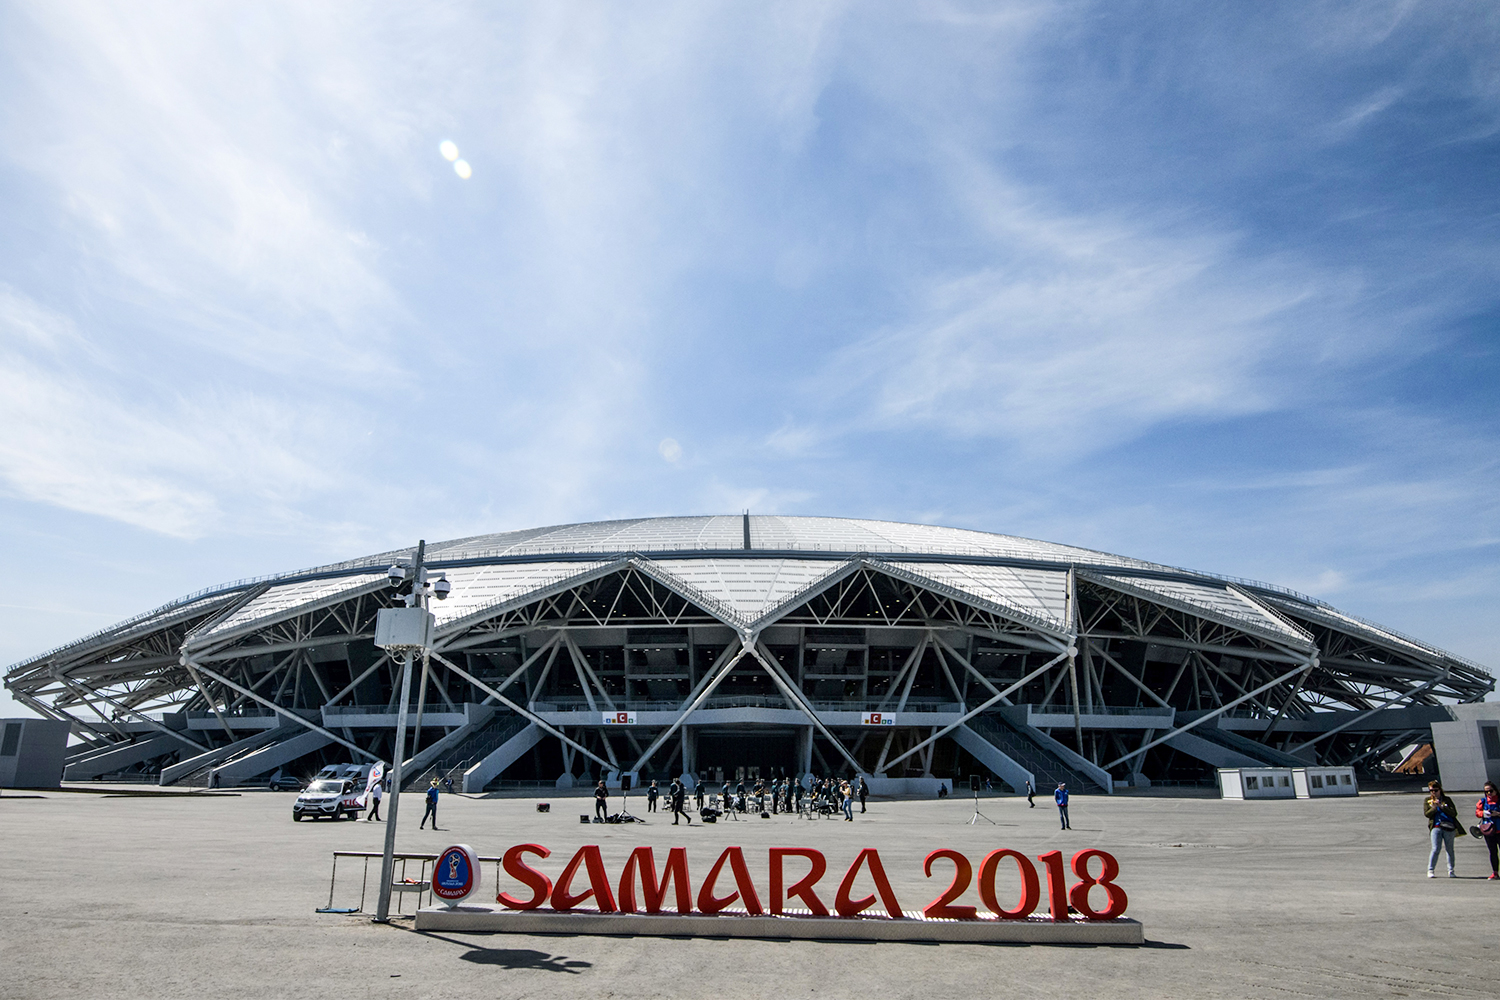 estadios copa mundial rusia 2018 samara stadium getty images